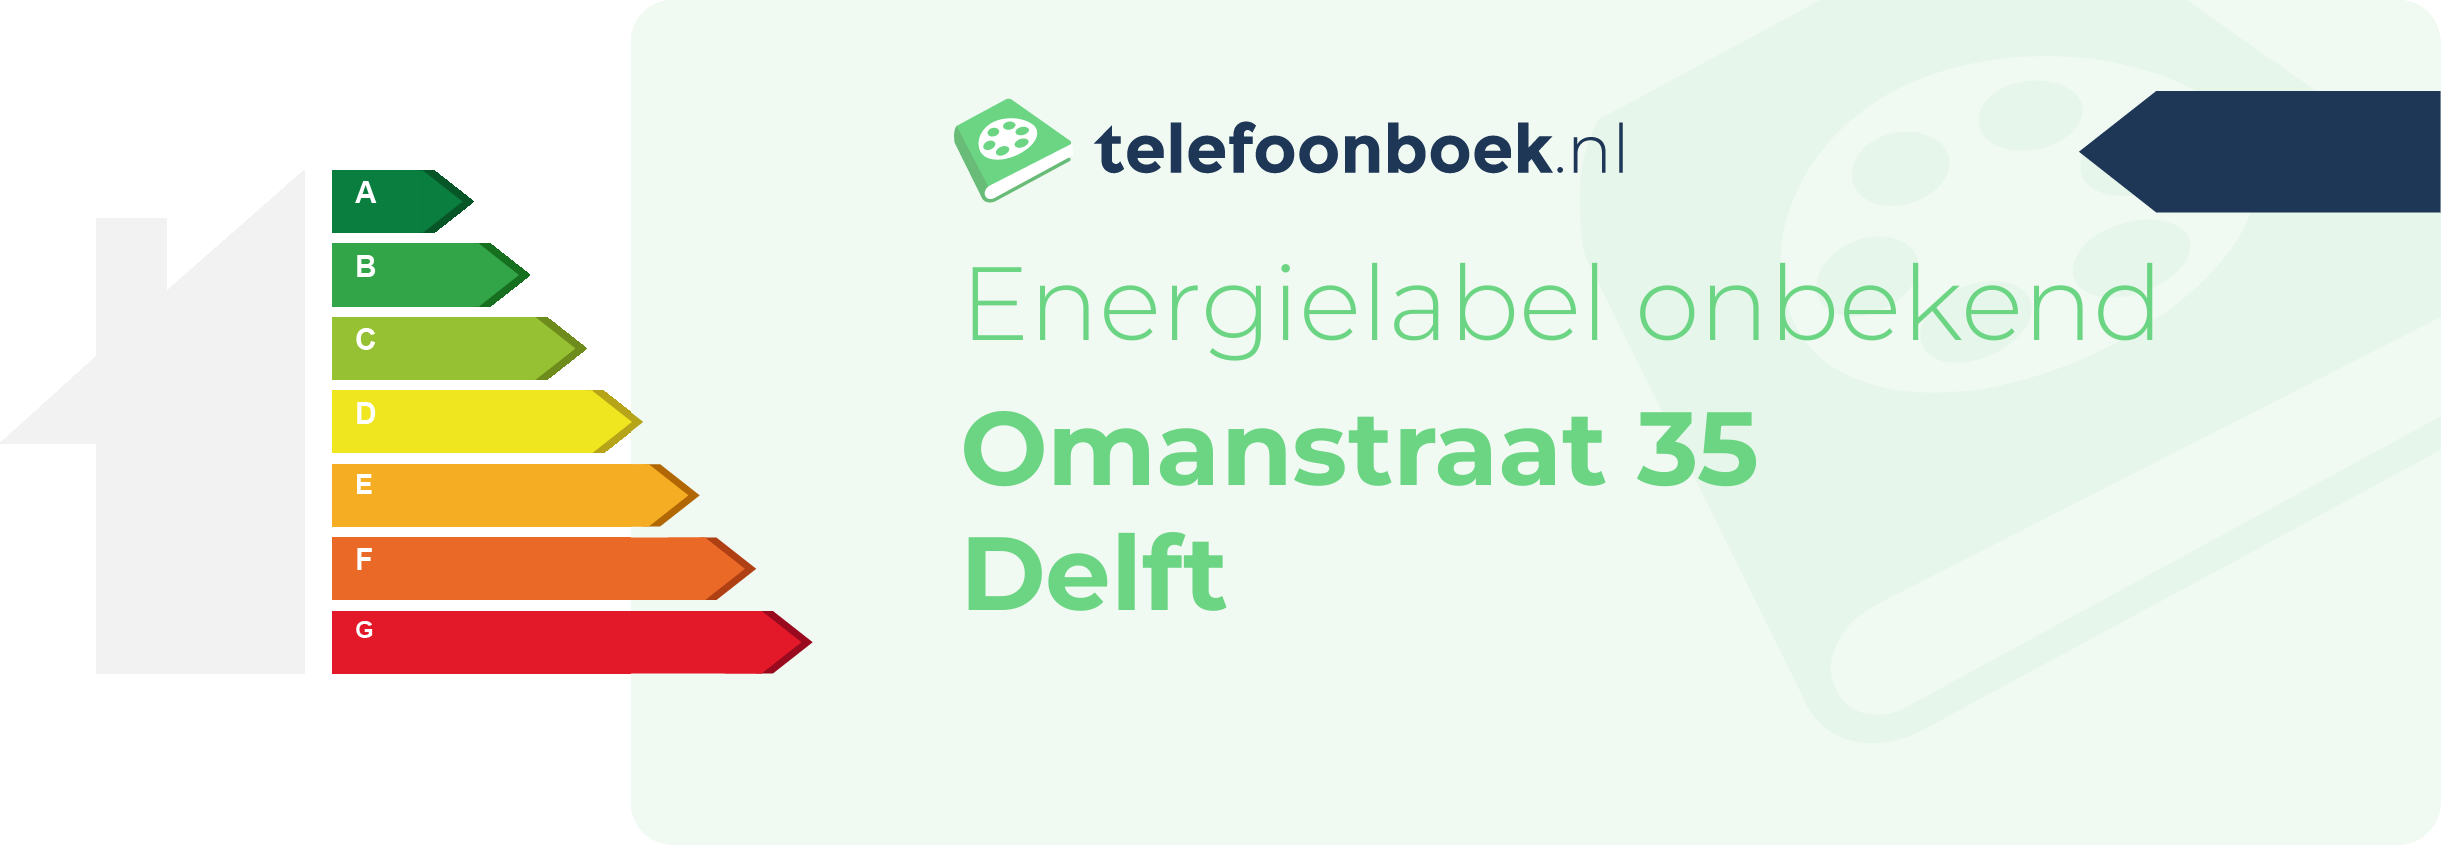 Energielabel Omanstraat 35 Delft